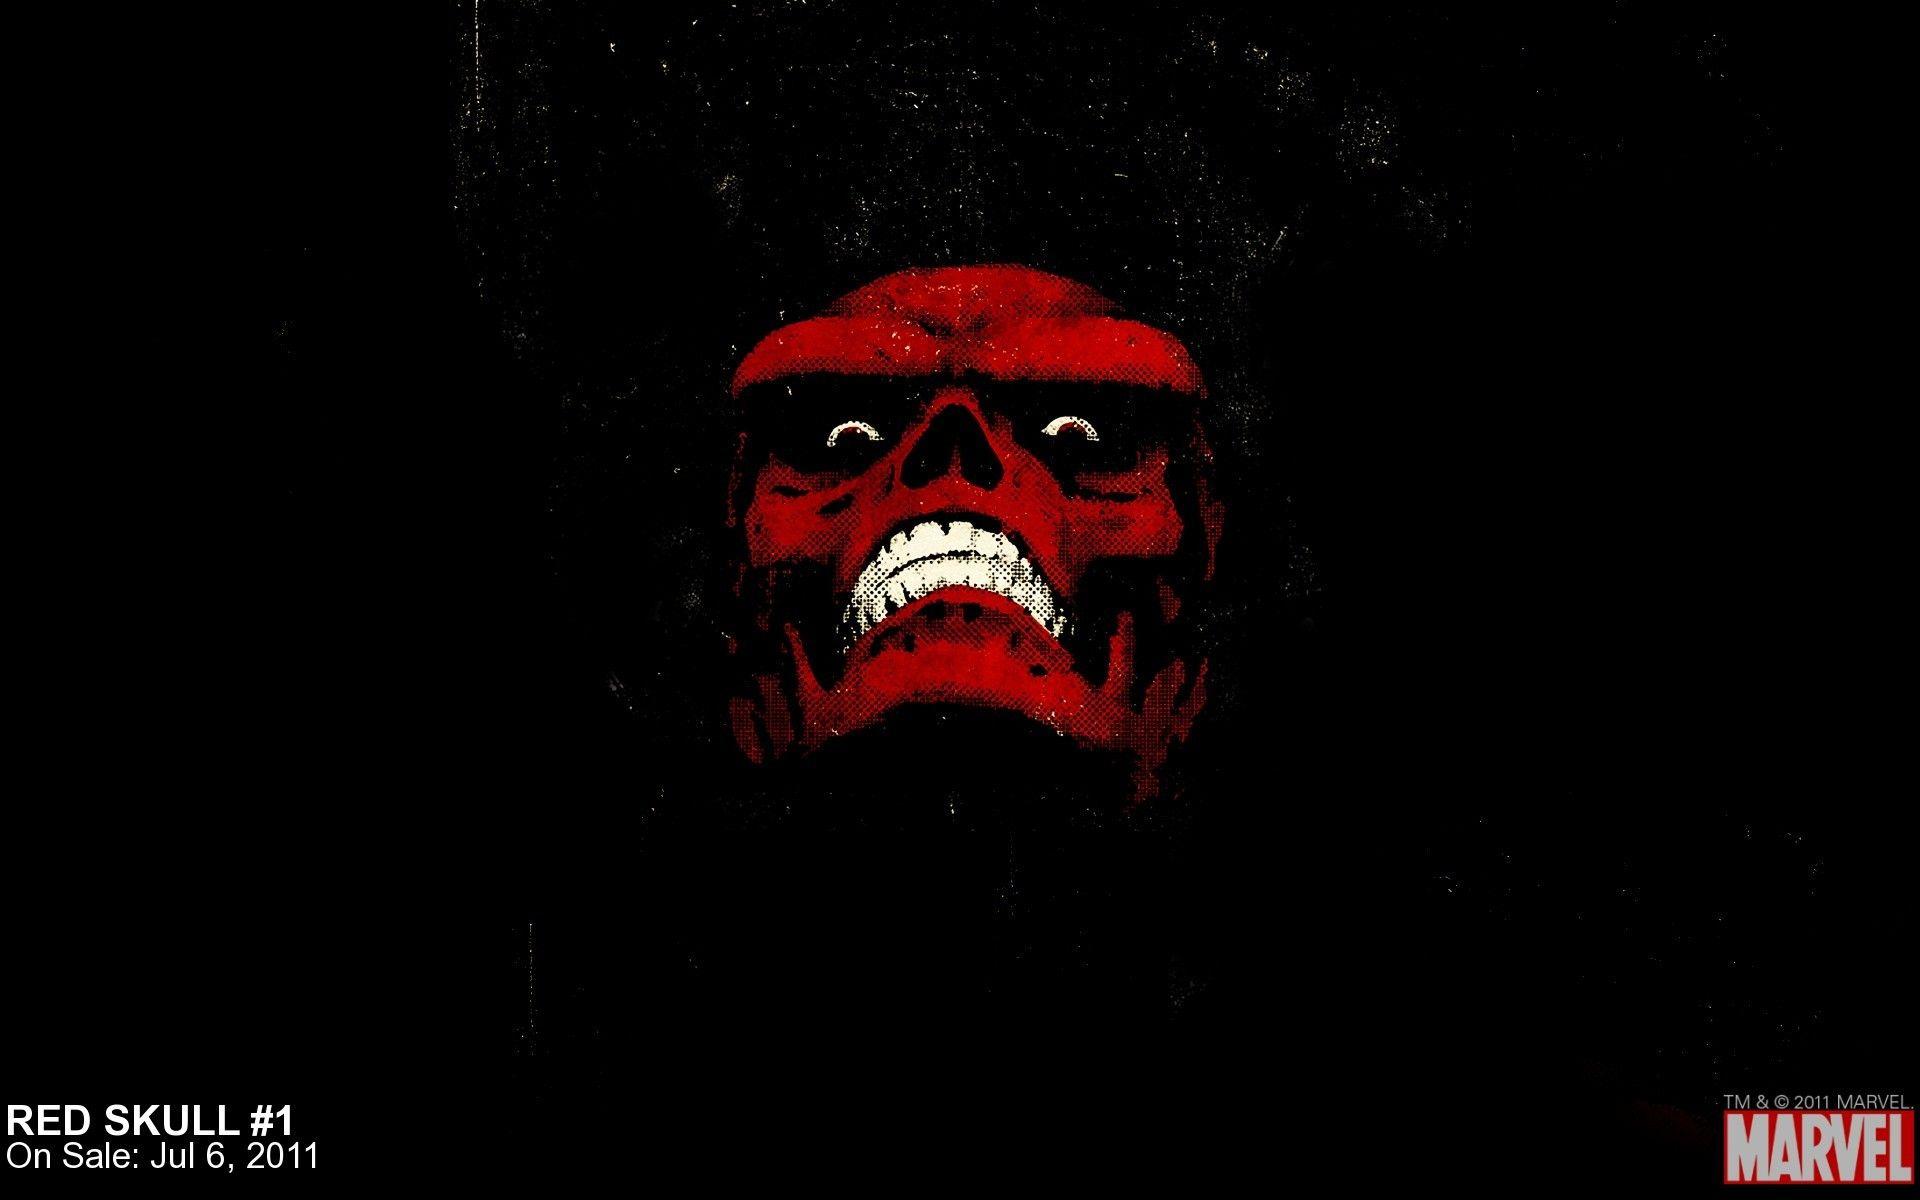 Red Skull Wallpaper. Skull wallpaper, Red